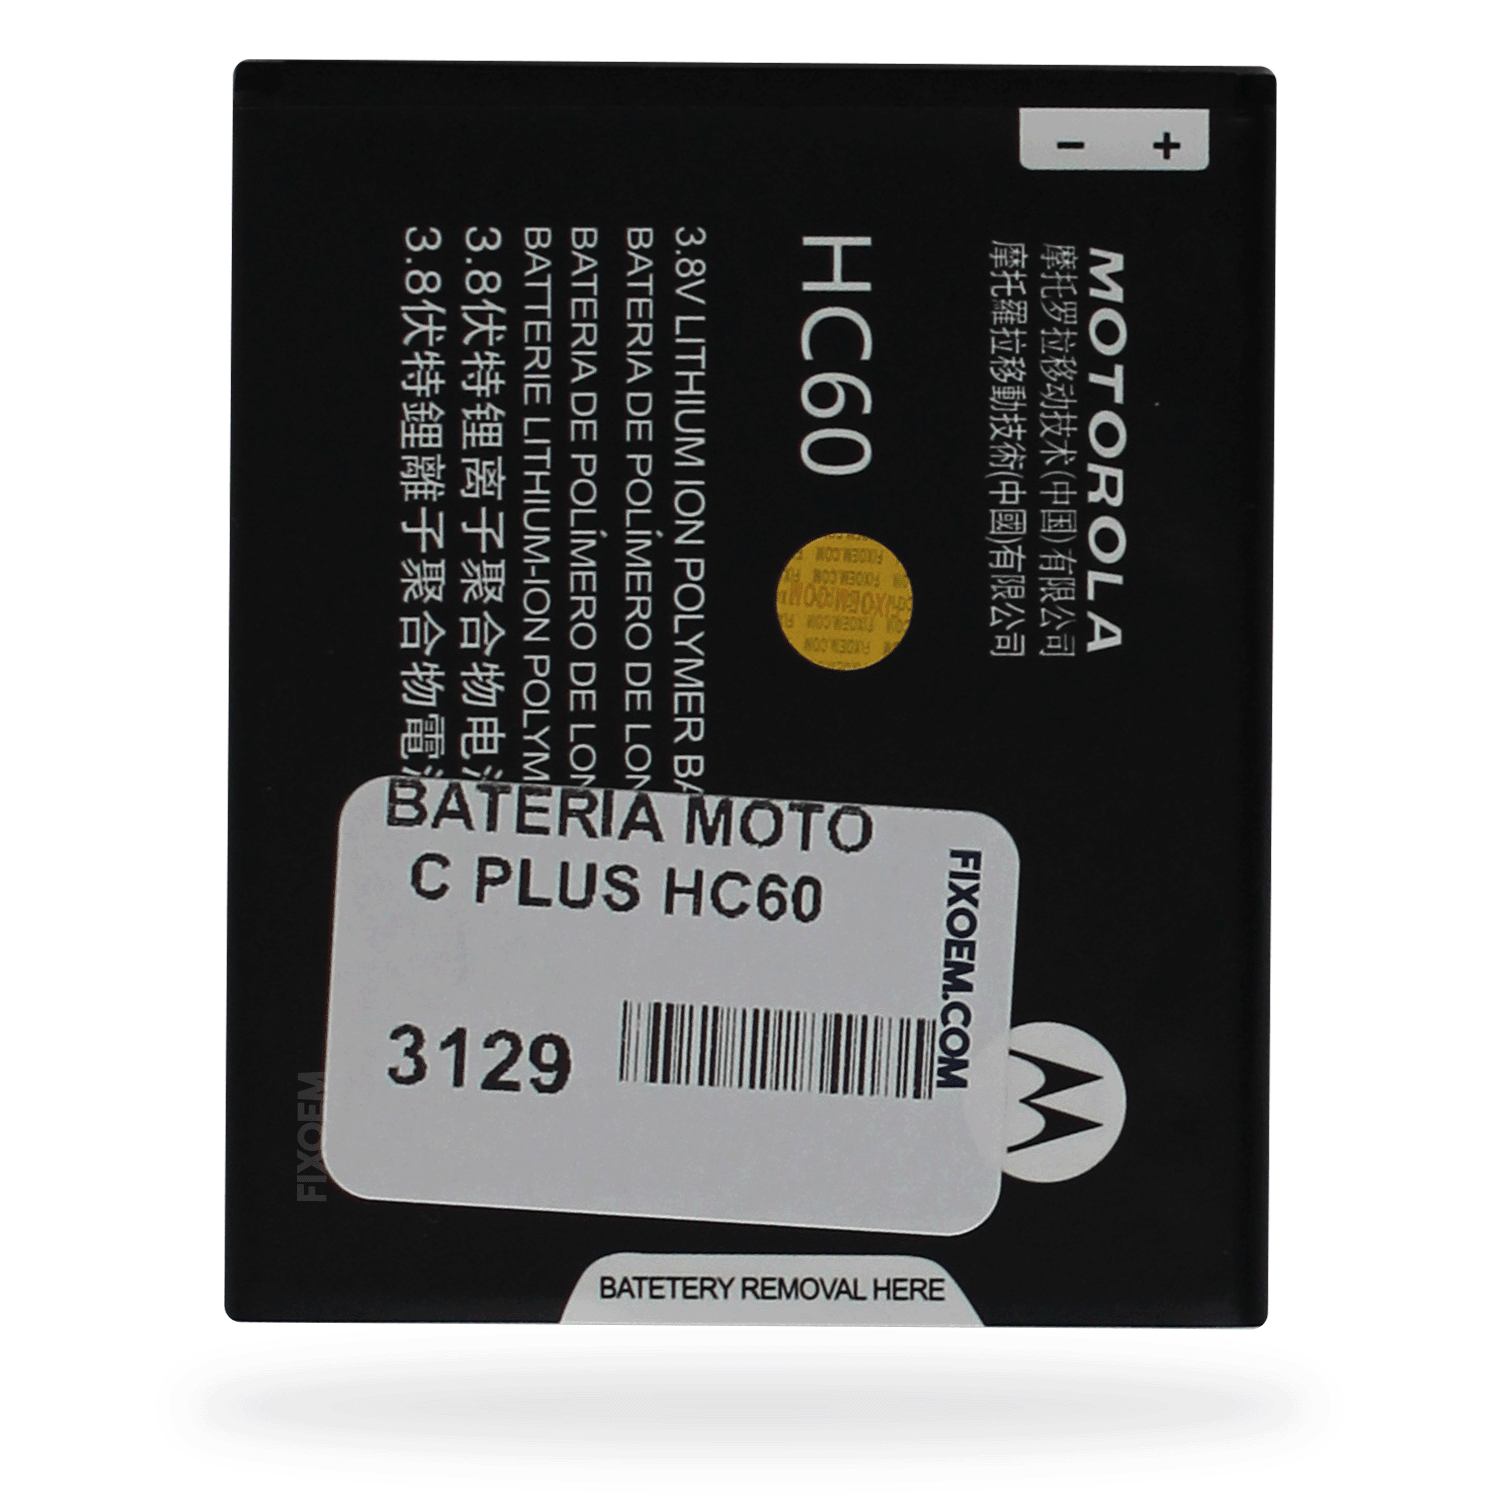 Bateria Moto C Plus Xt1724 Hc60 a solo $ 110.00 Refaccion y puestos celulares, refurbish y microelectronica.- FixOEM